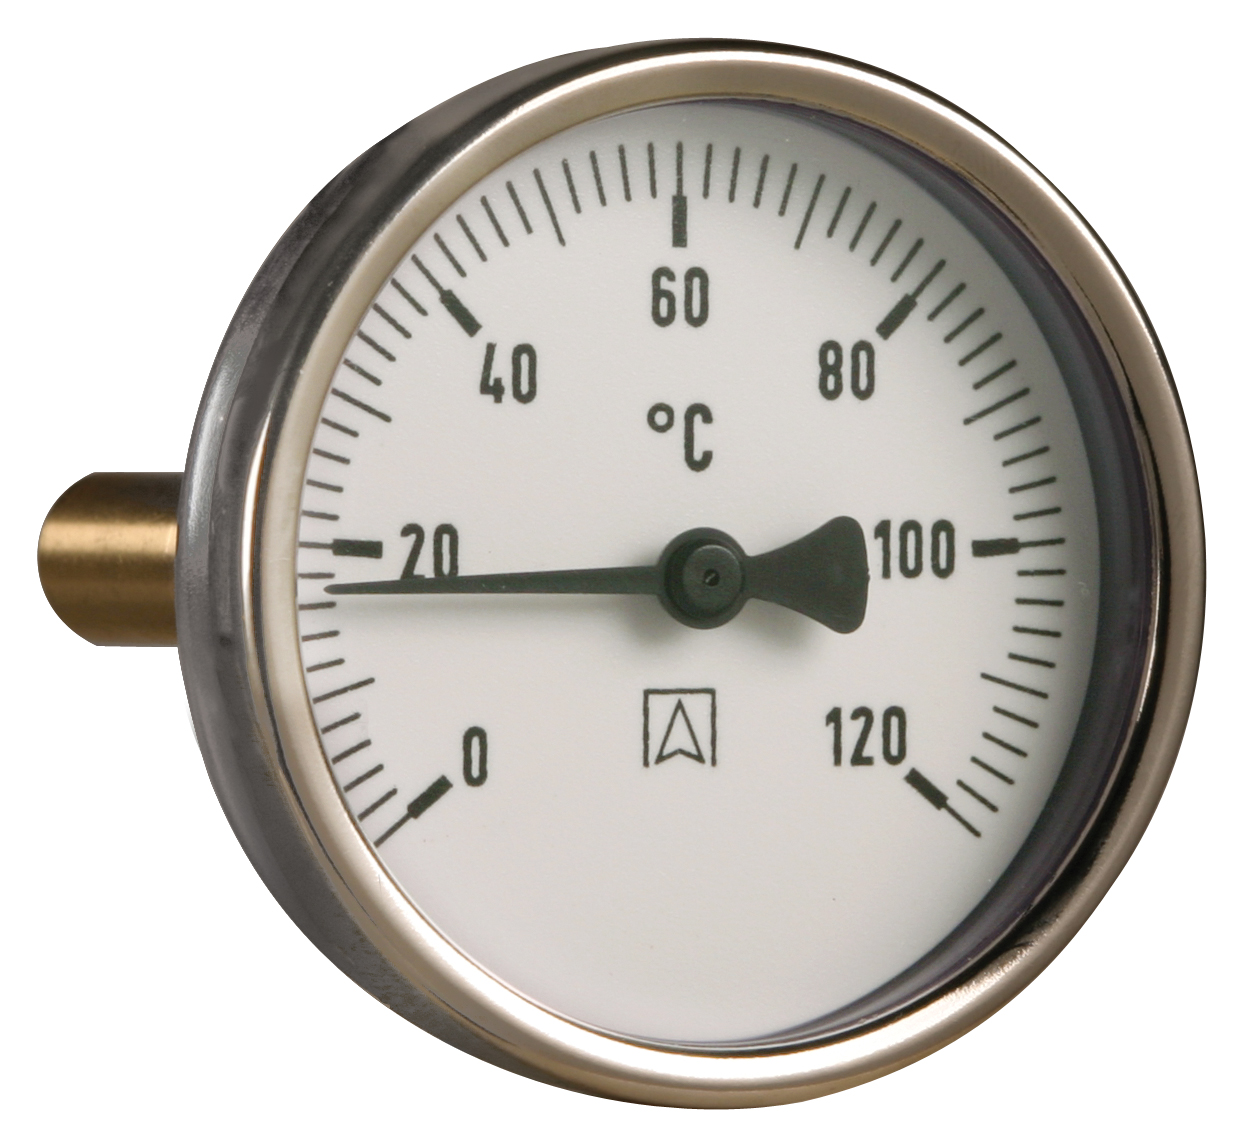 Termometr bimetaliczny BiTh 100, fi100 mm, 0÷60°C, L 63 mm, G1/2", rad, kl. 2